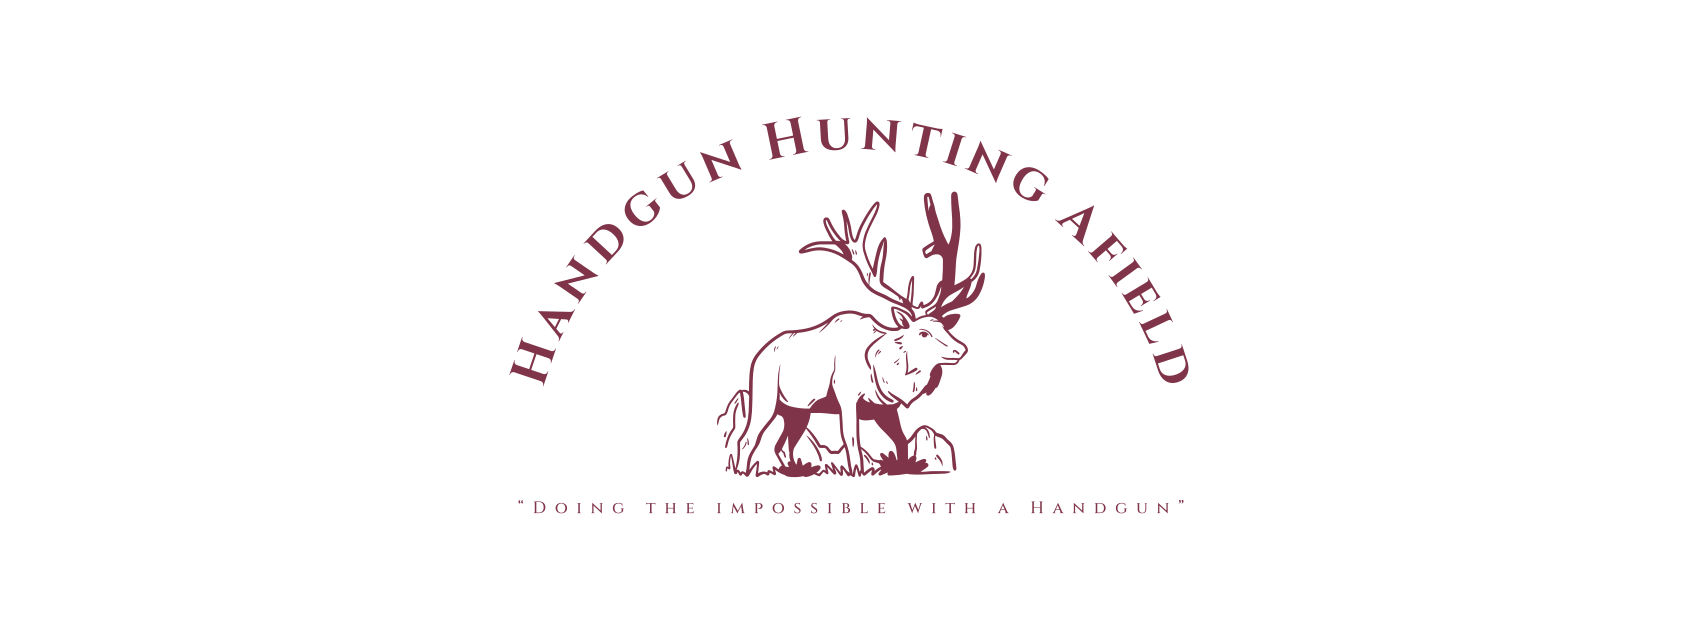 handgunhuntingafield.blog